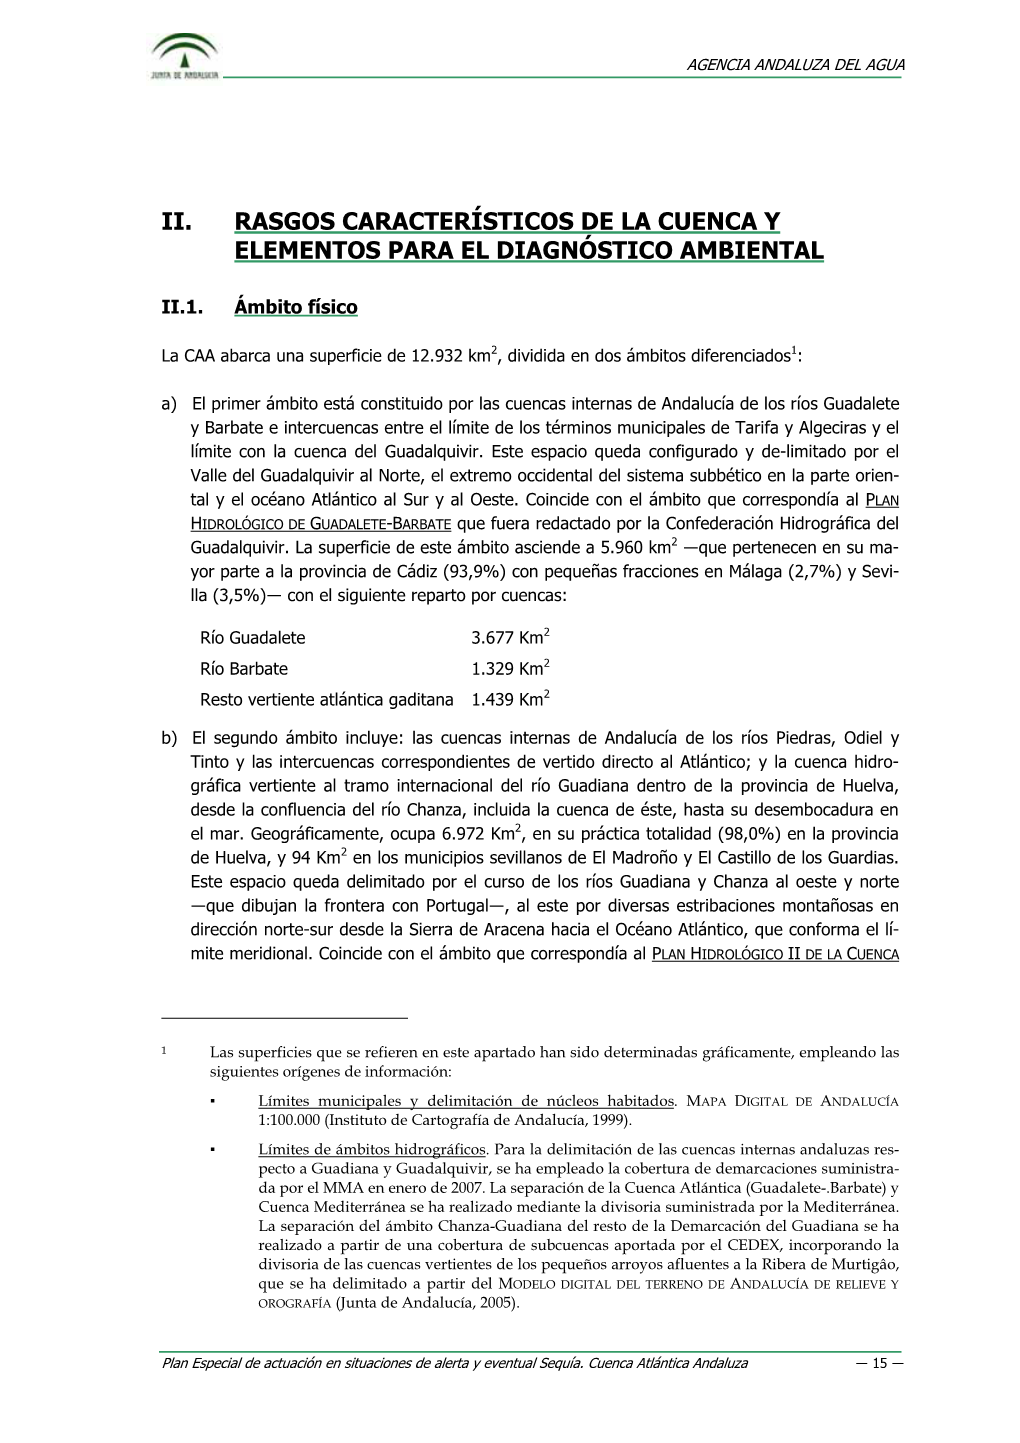 Ii. Rasgos Característicos De La Cuenca Y Elementos Para El Diagnóstico Ambiental